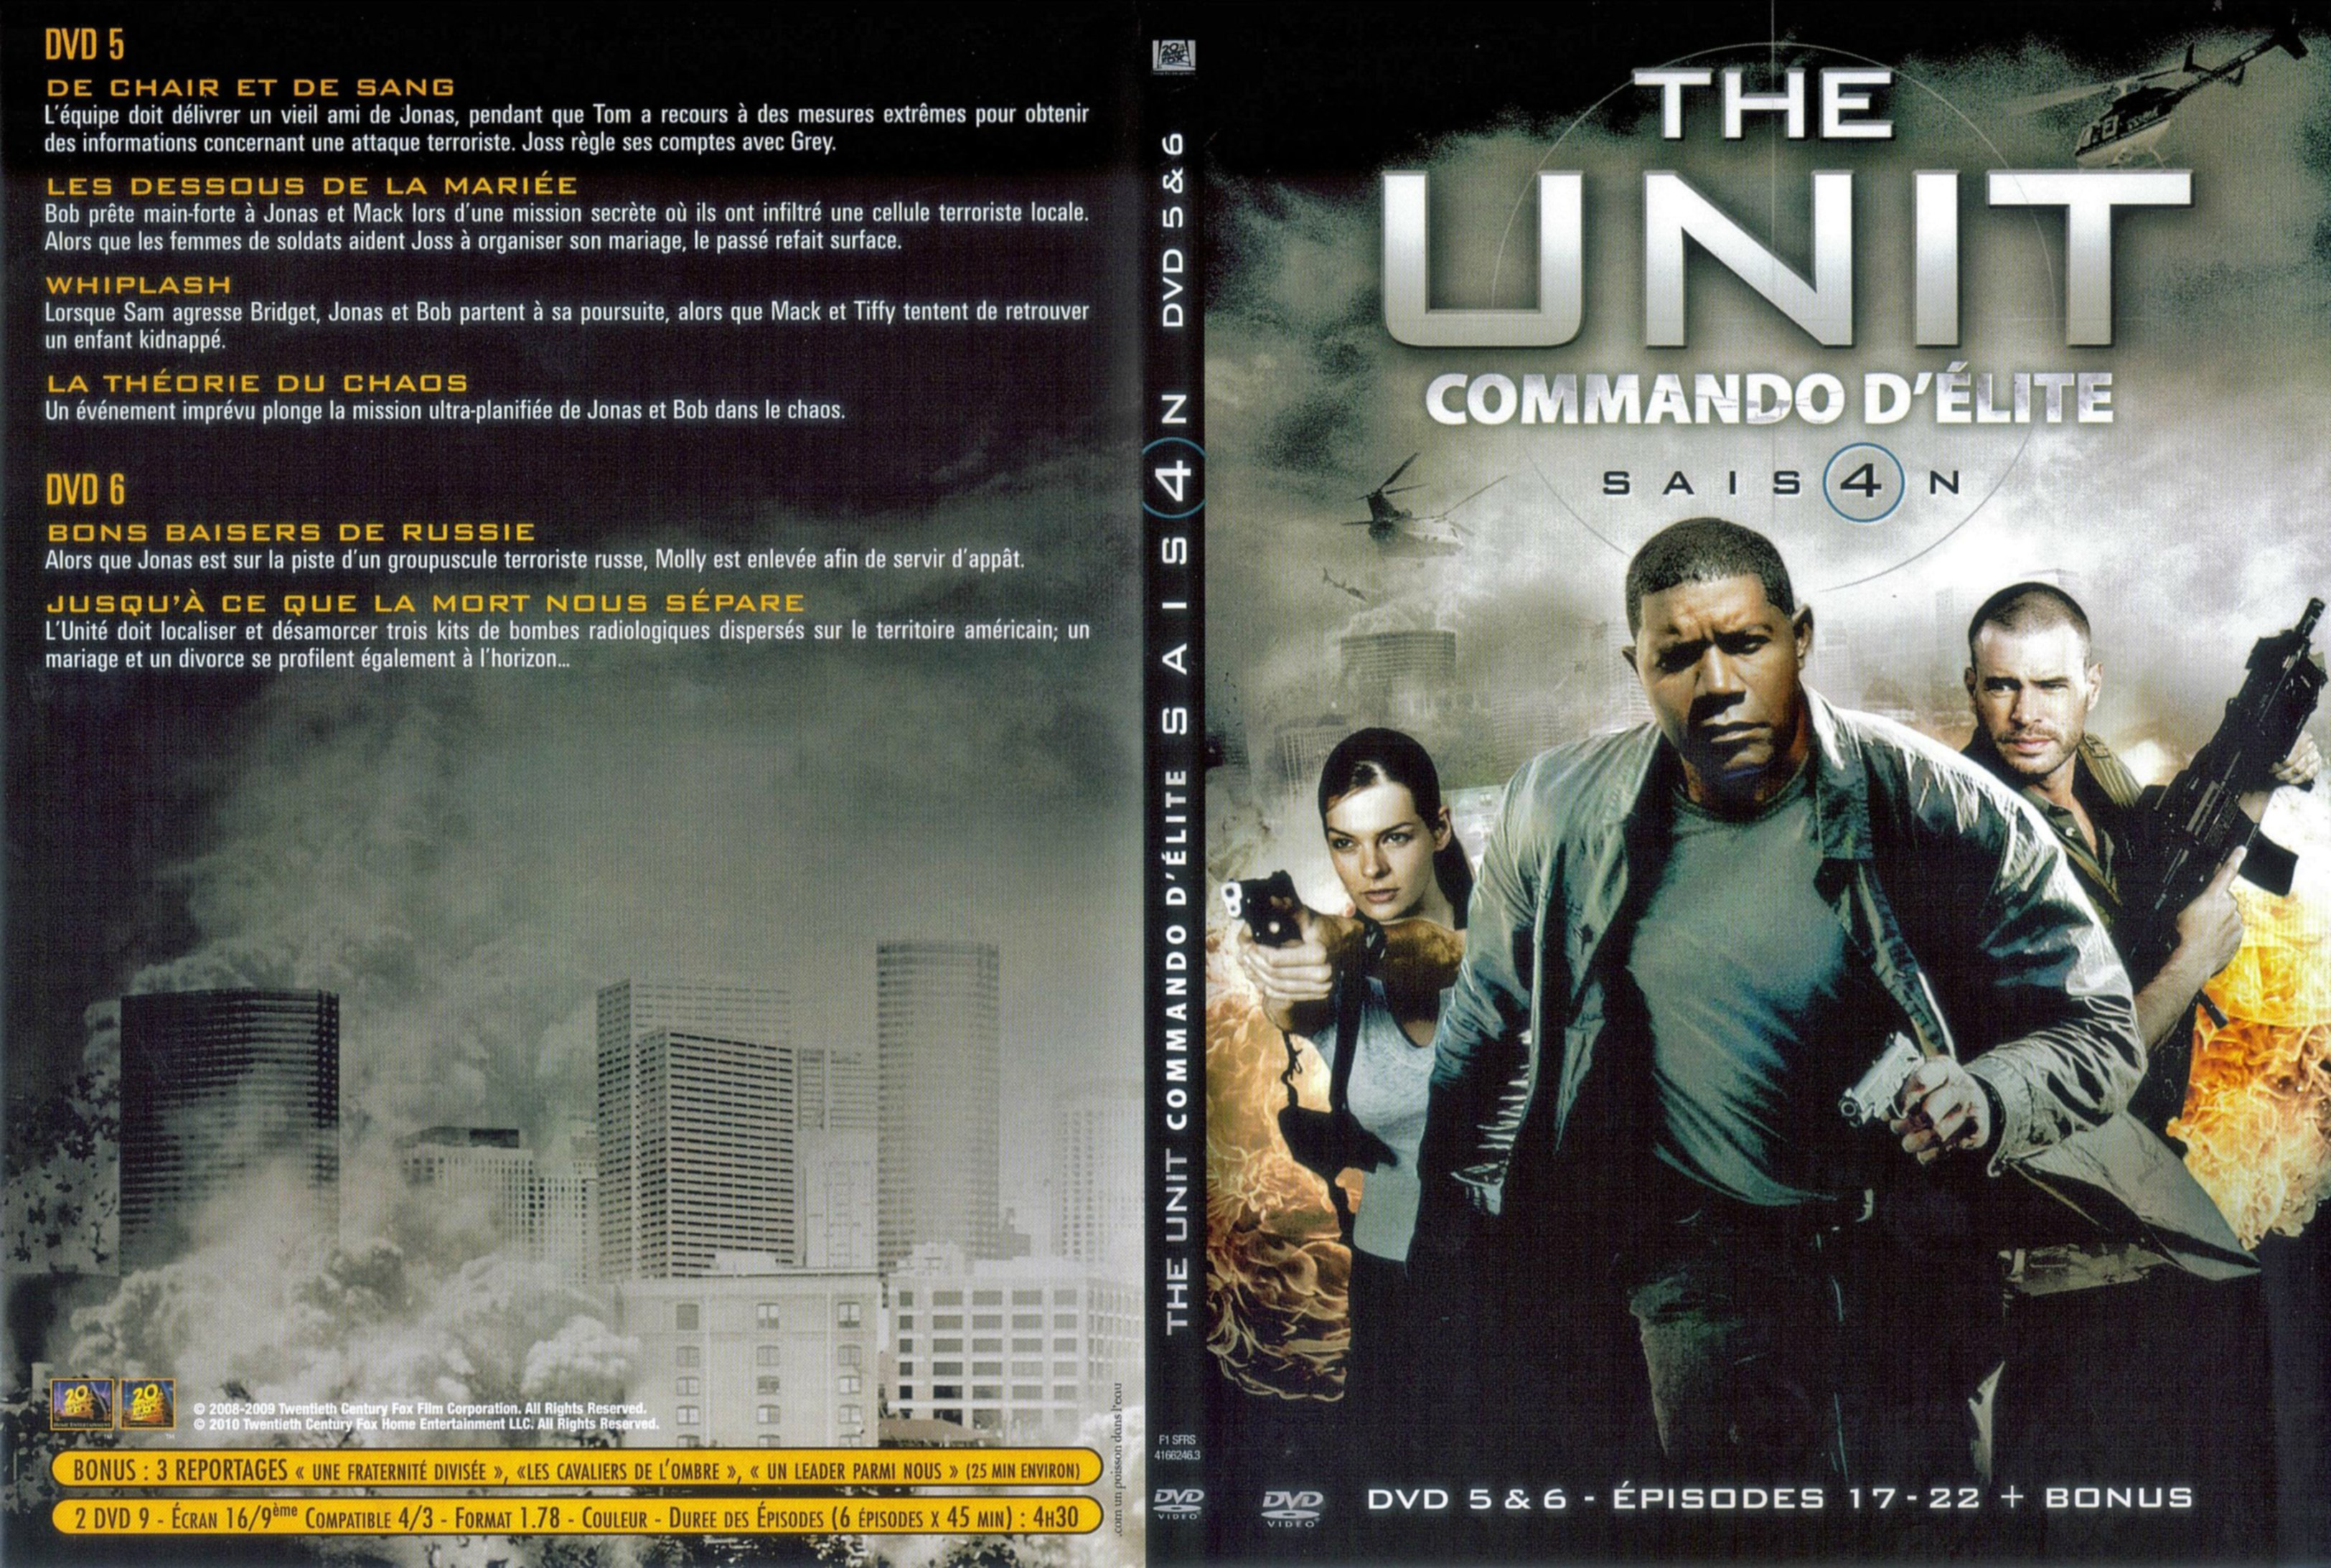 Jaquette DVD The unit saison 4 DVD 3